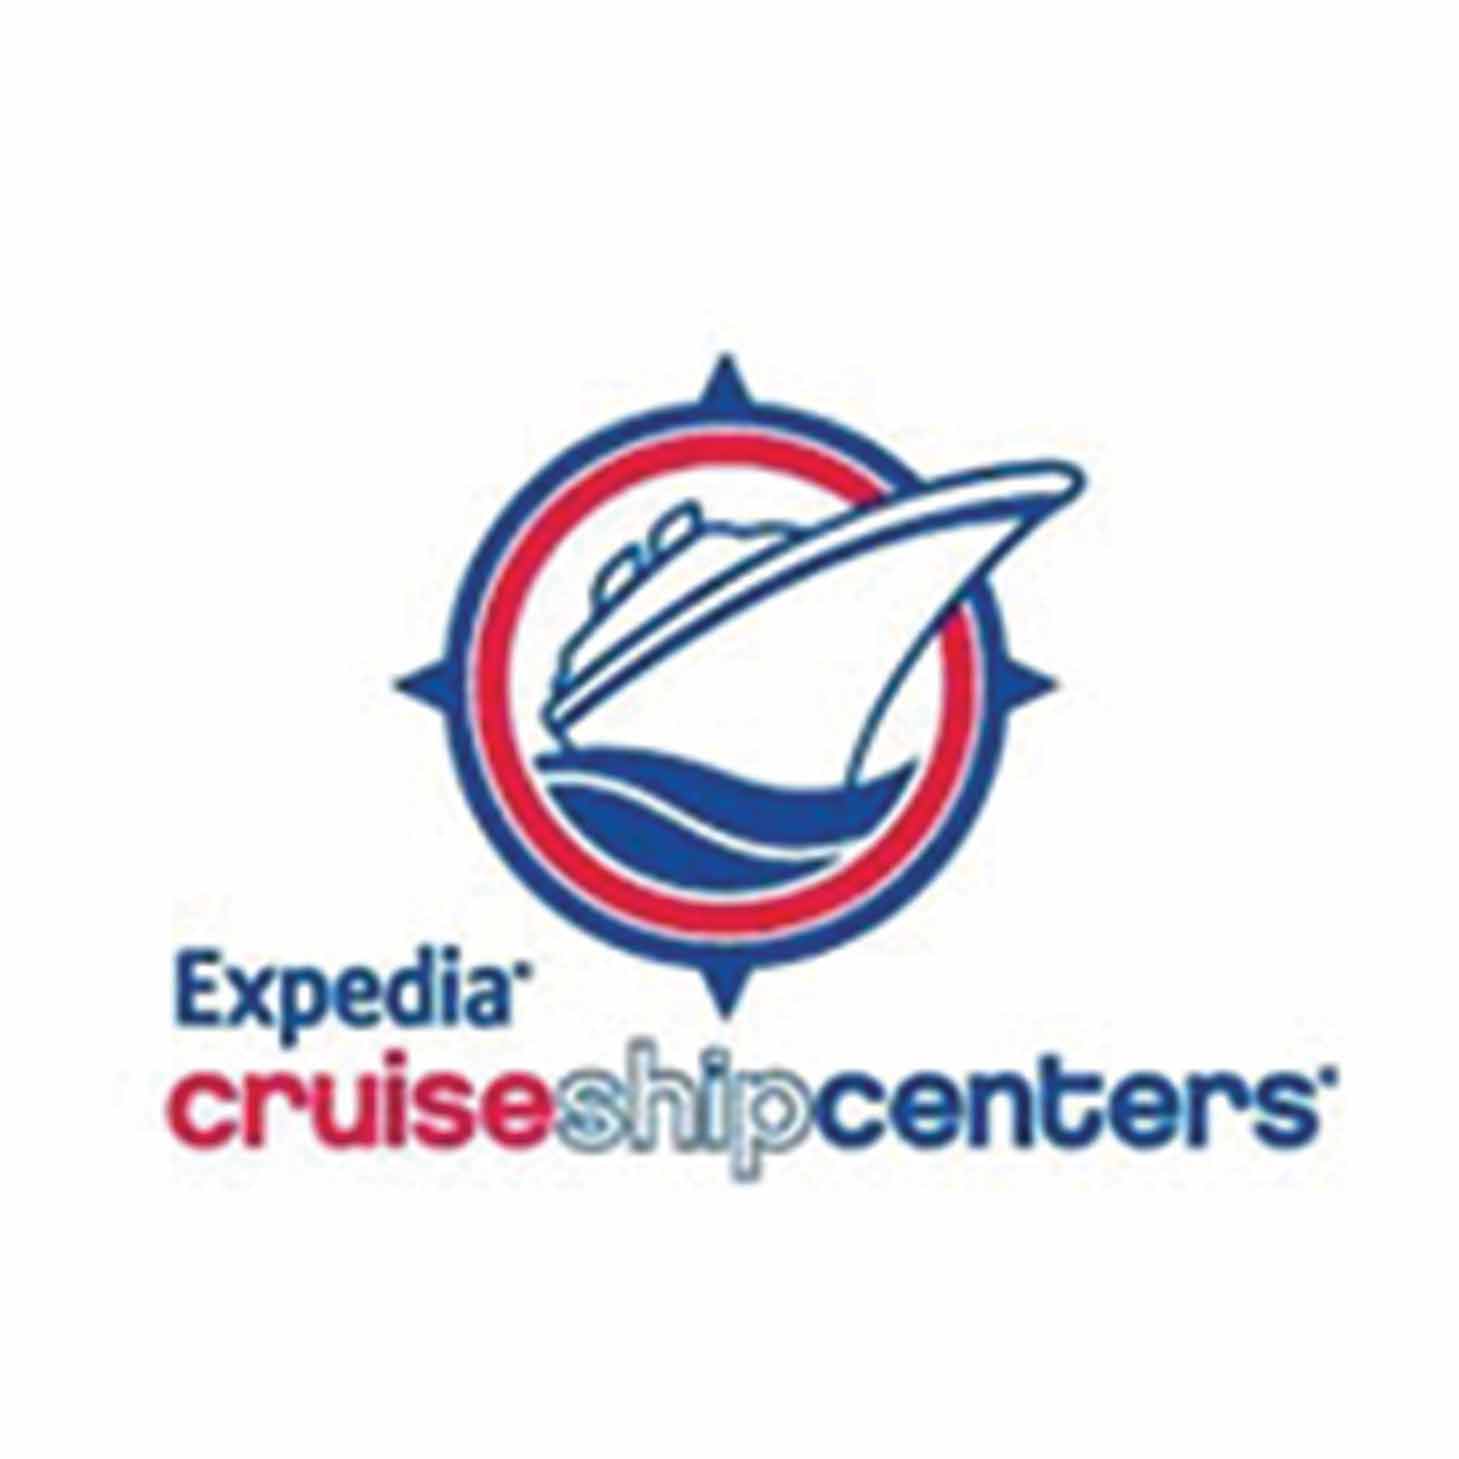 expedia cruise ship center